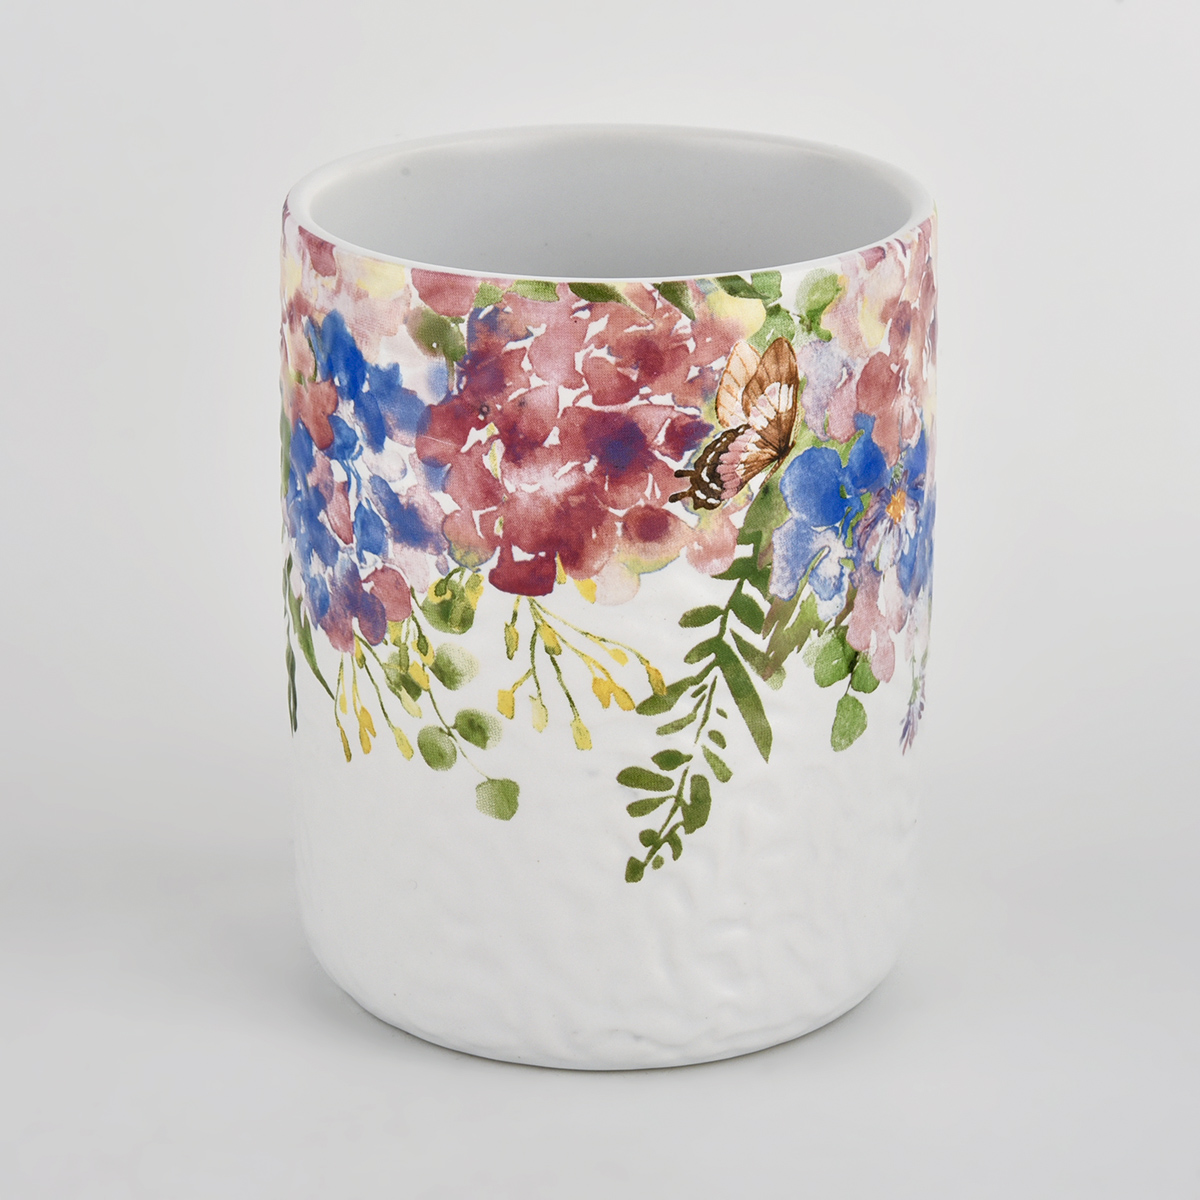 recipiente de cerámica blanca con impresión colorida